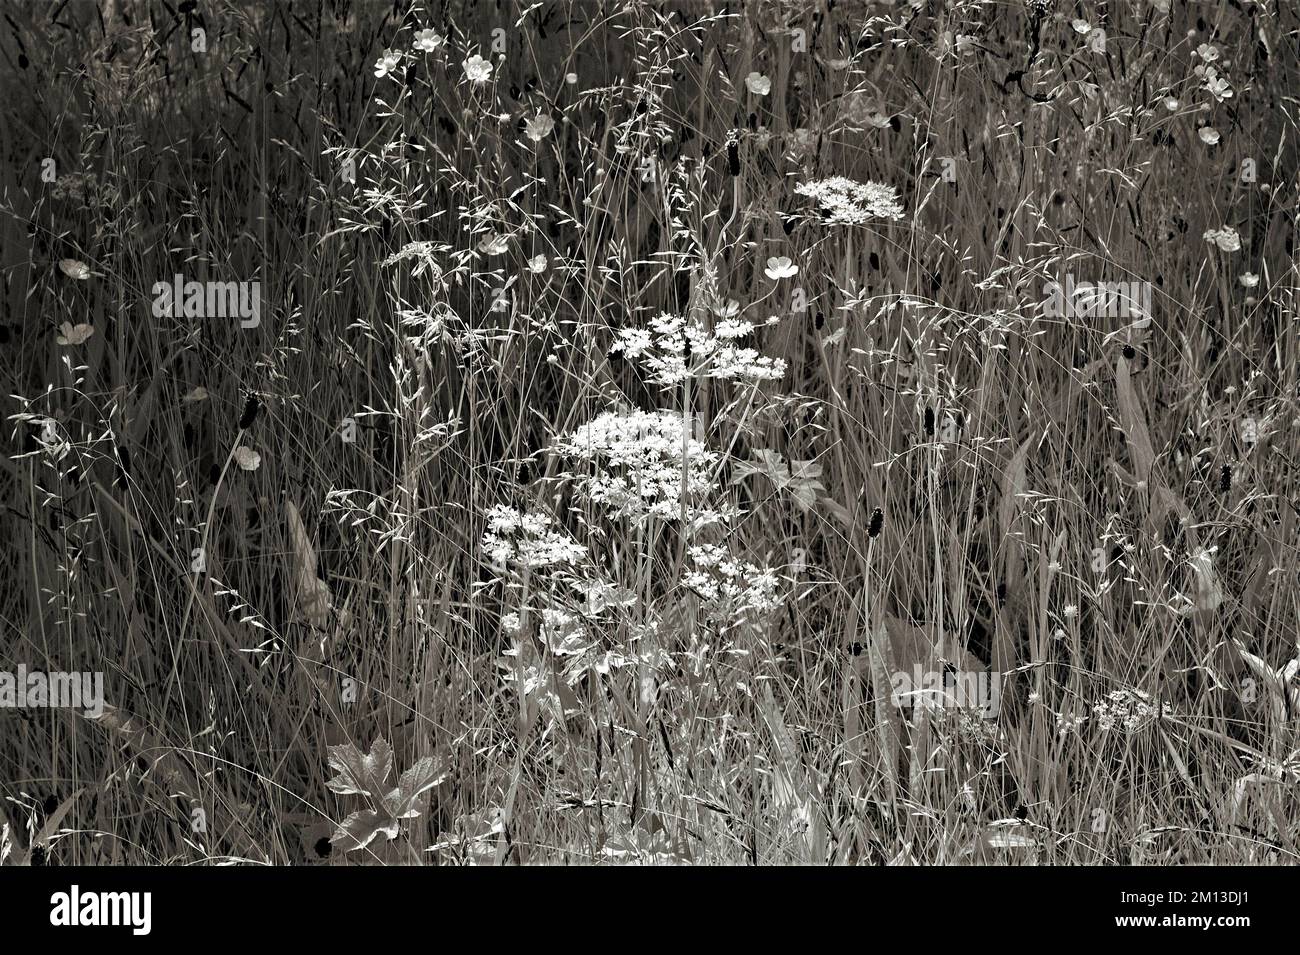 Photographie en noir et blanc de la prairie de fleurs sauvages Cannock Chase AONB zone de beauté naturelle exceptionnelle dans le Staffordshire Angleterre Royaume-Uni Banque D'Images